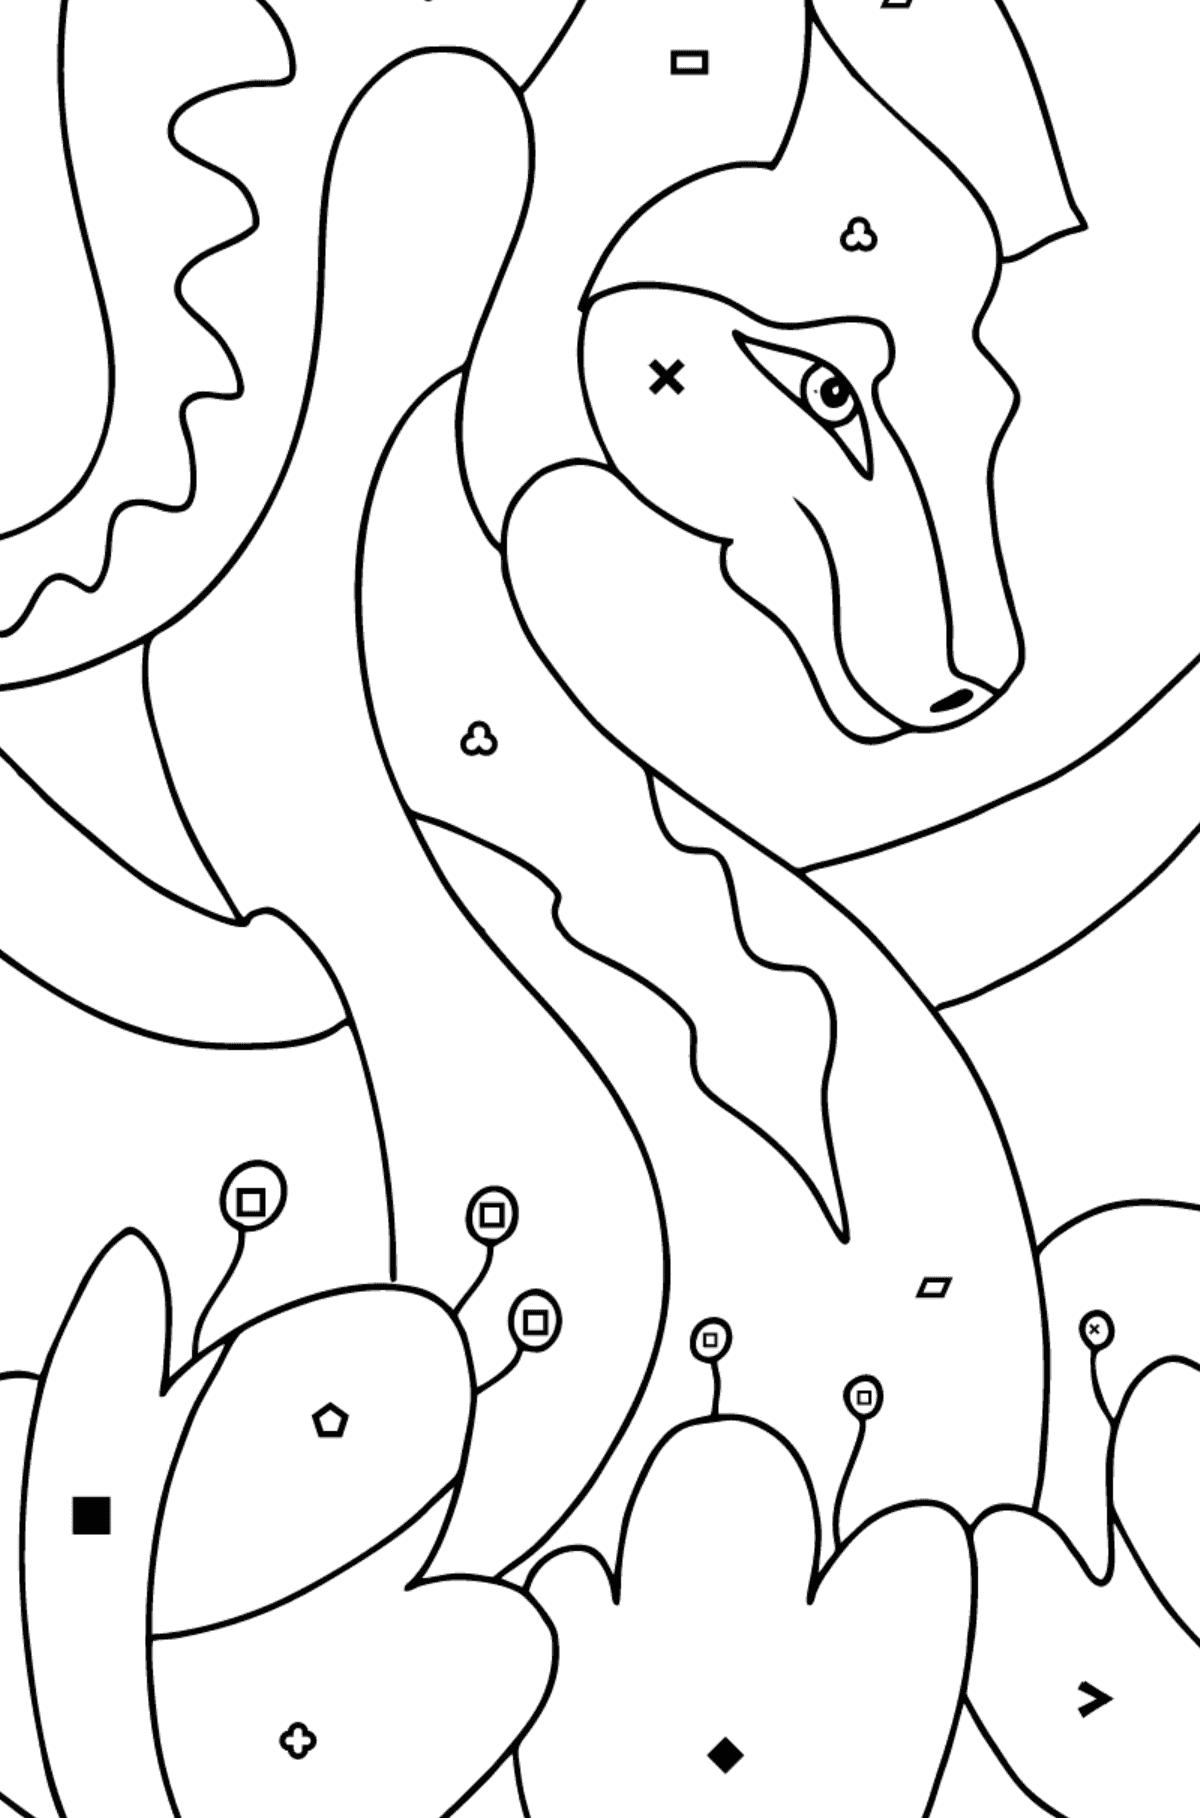 Coloriage Dragon coloré (difficile) - Coloriage par Symboles pour les Enfants